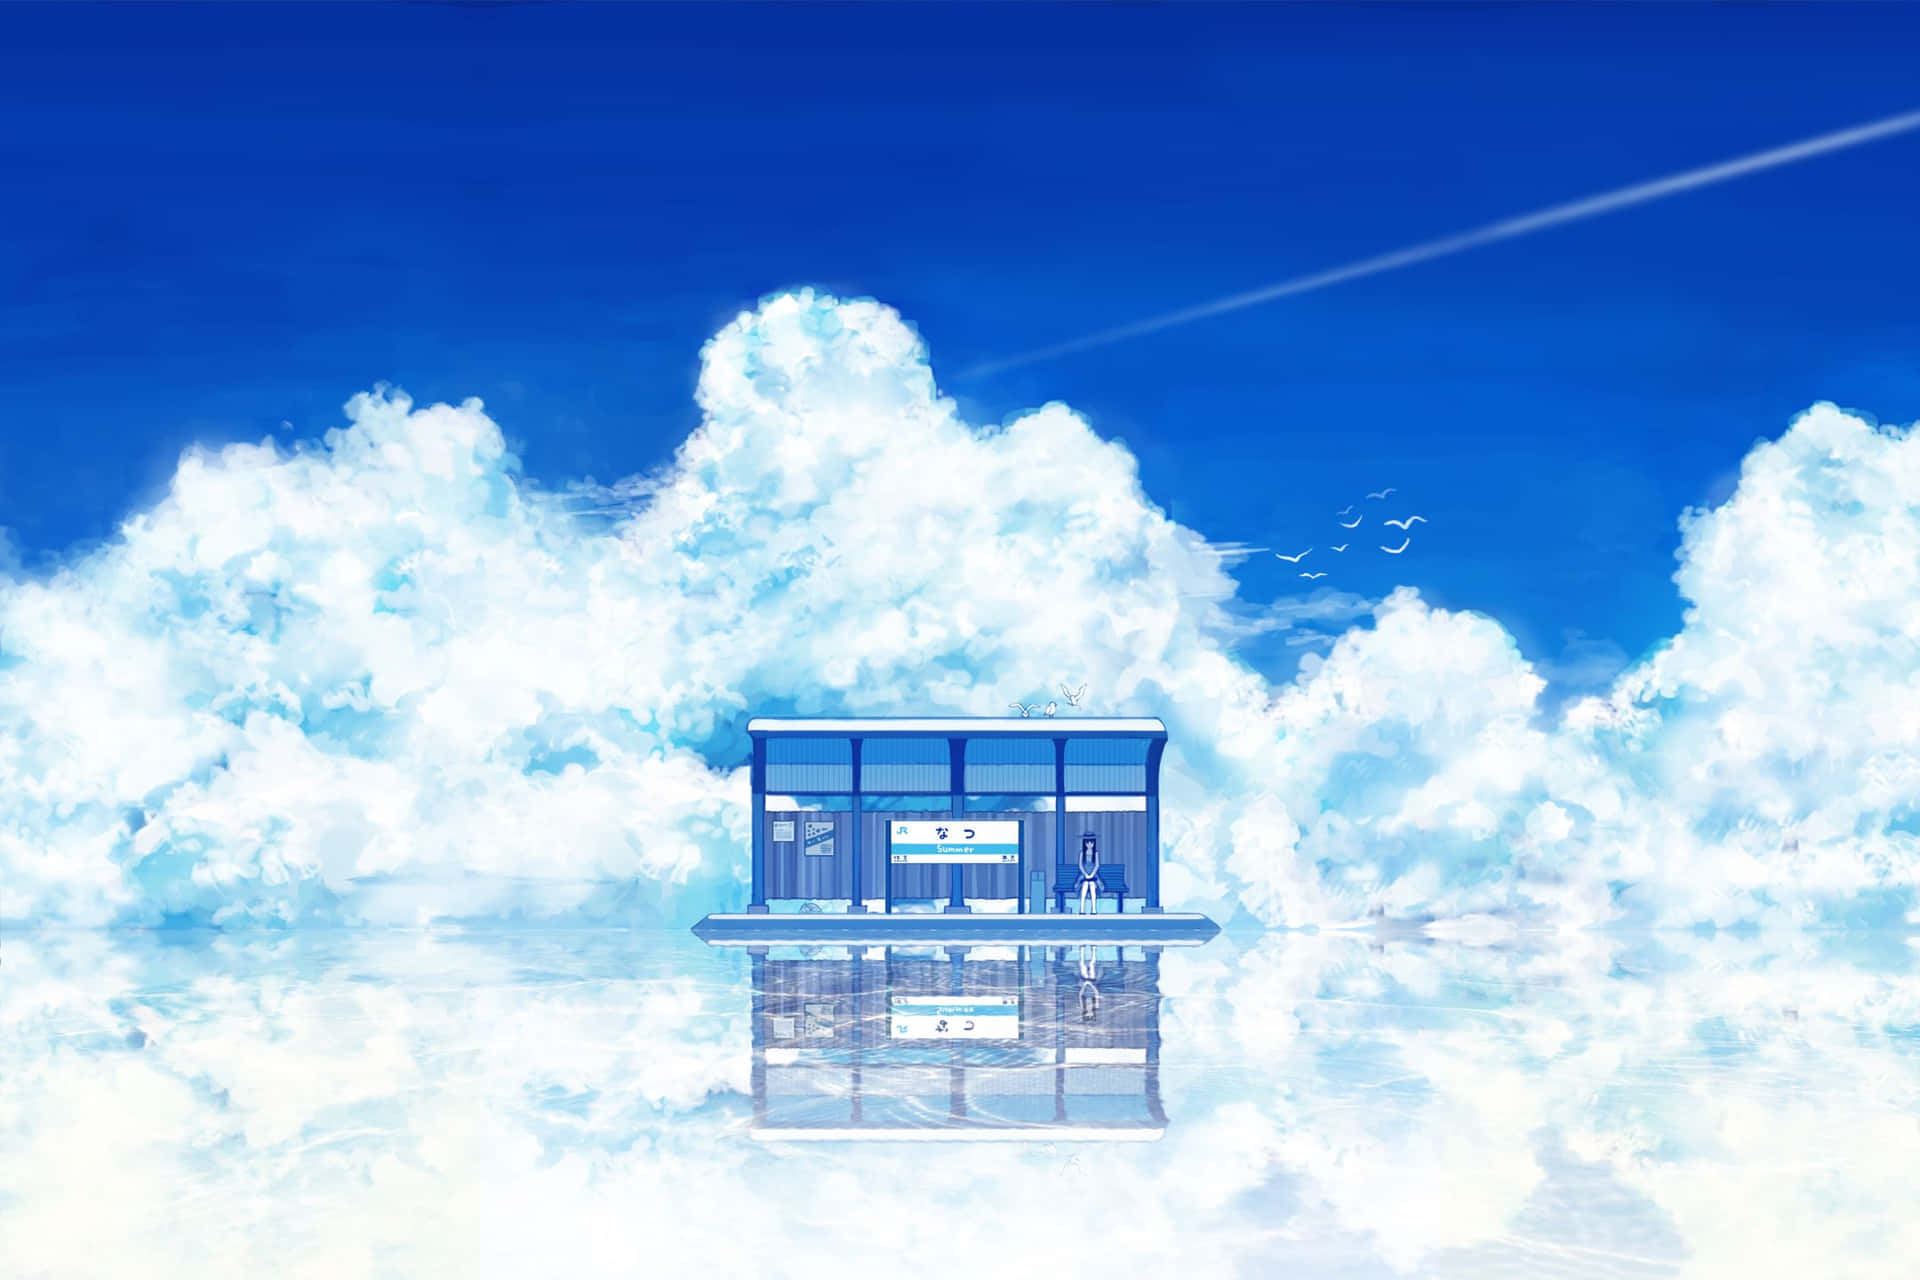 200+] Anime Sky Wallpapers 